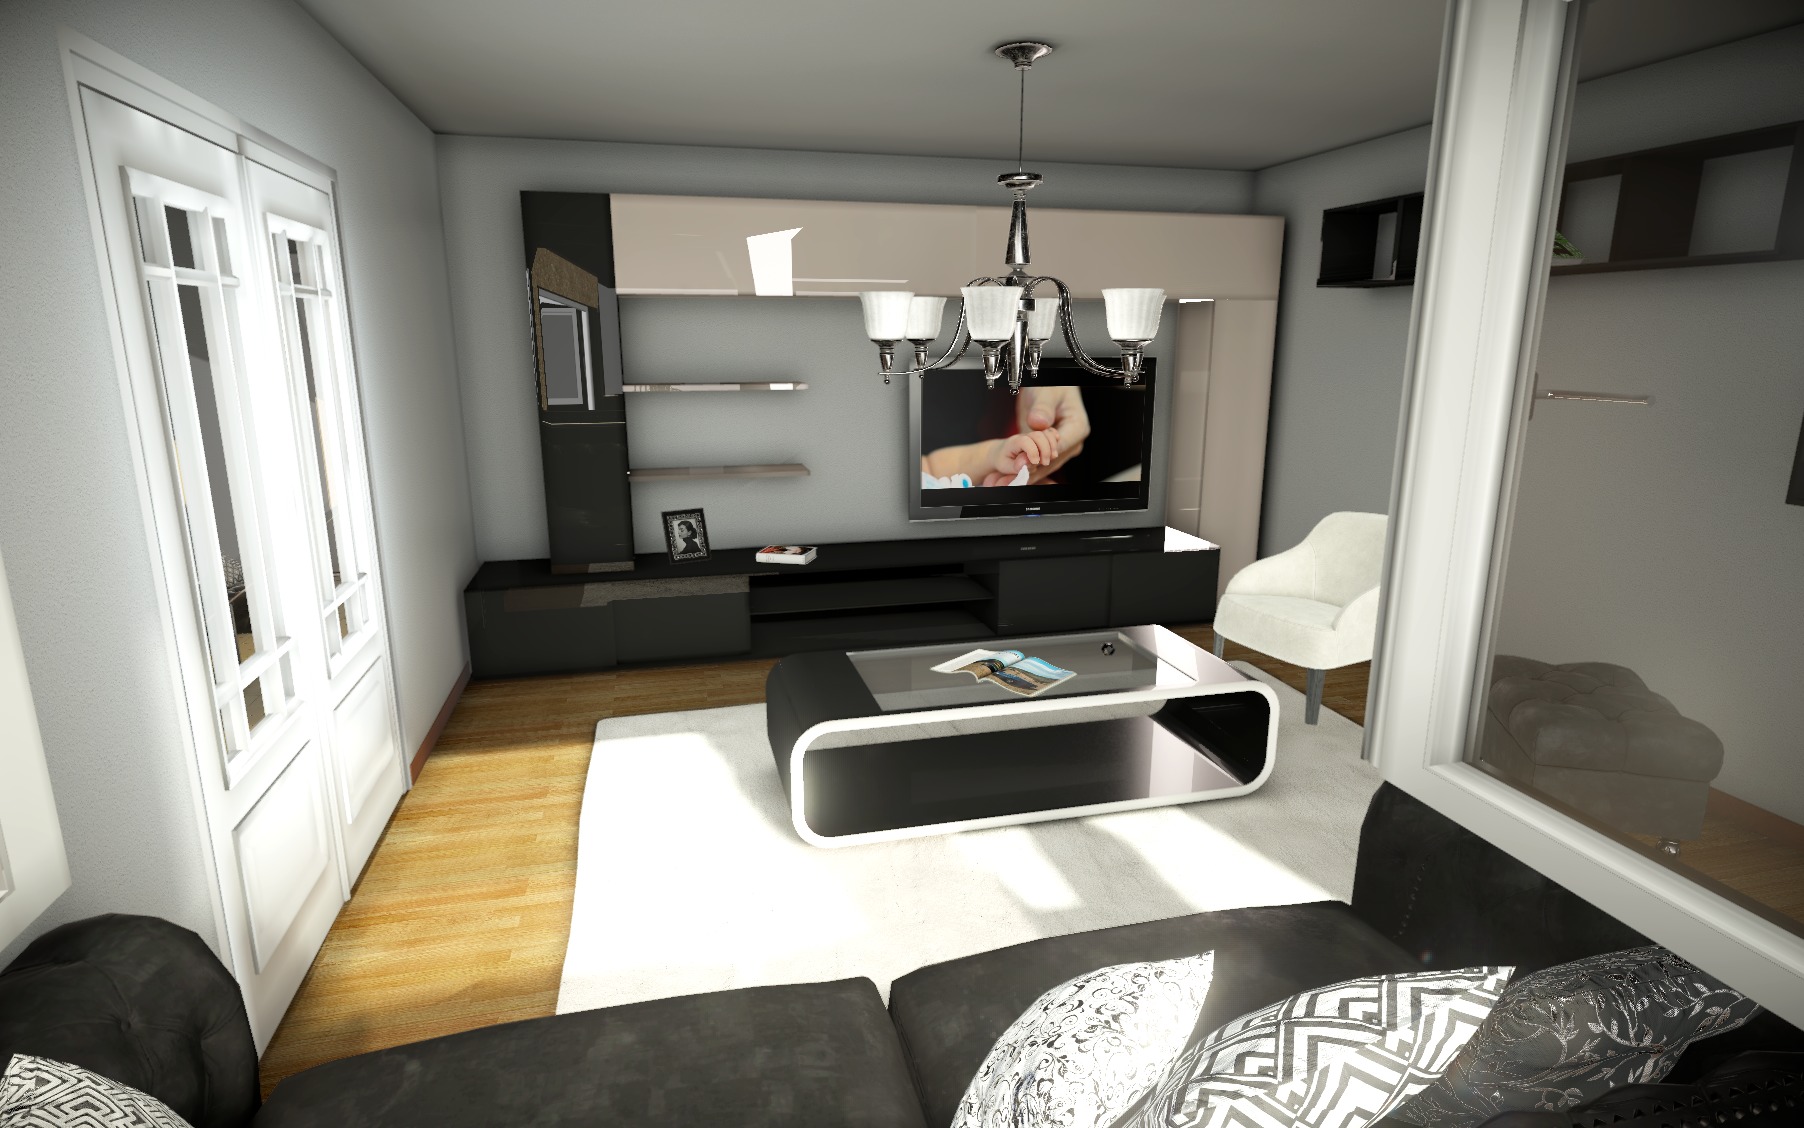 3D modeling - 3D rendering - Real estate promotion - Ecublens real estate project